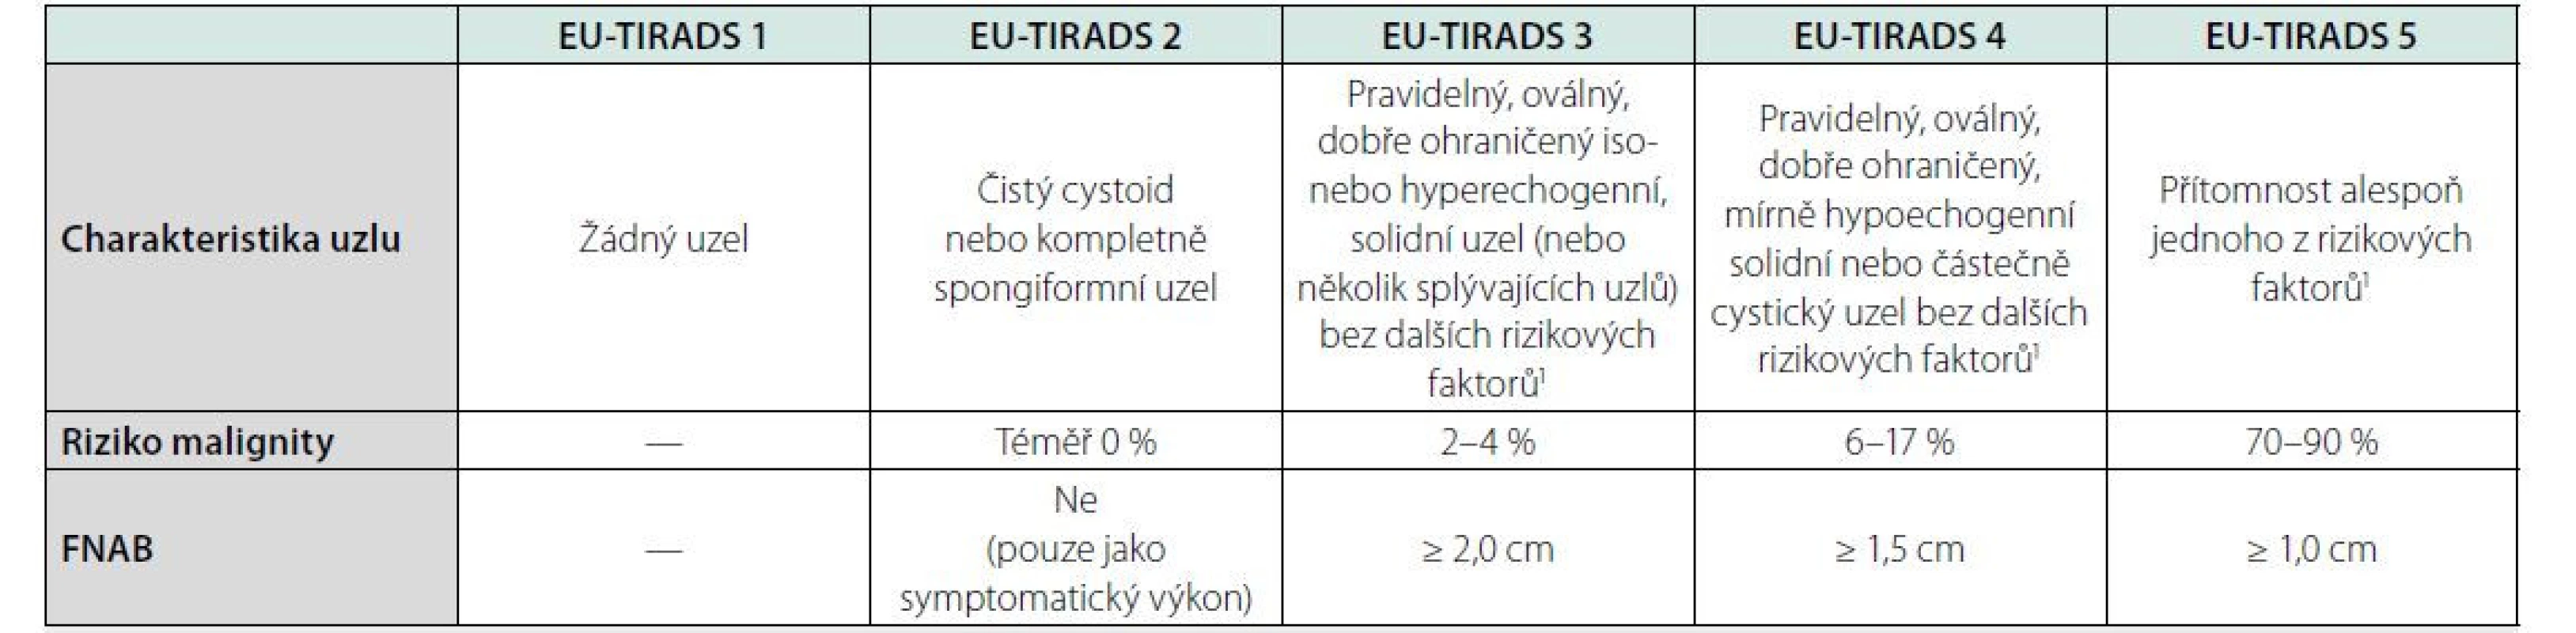 Kategorizace a management tyreoidálních uzlů podle EU-TIRADS (8)